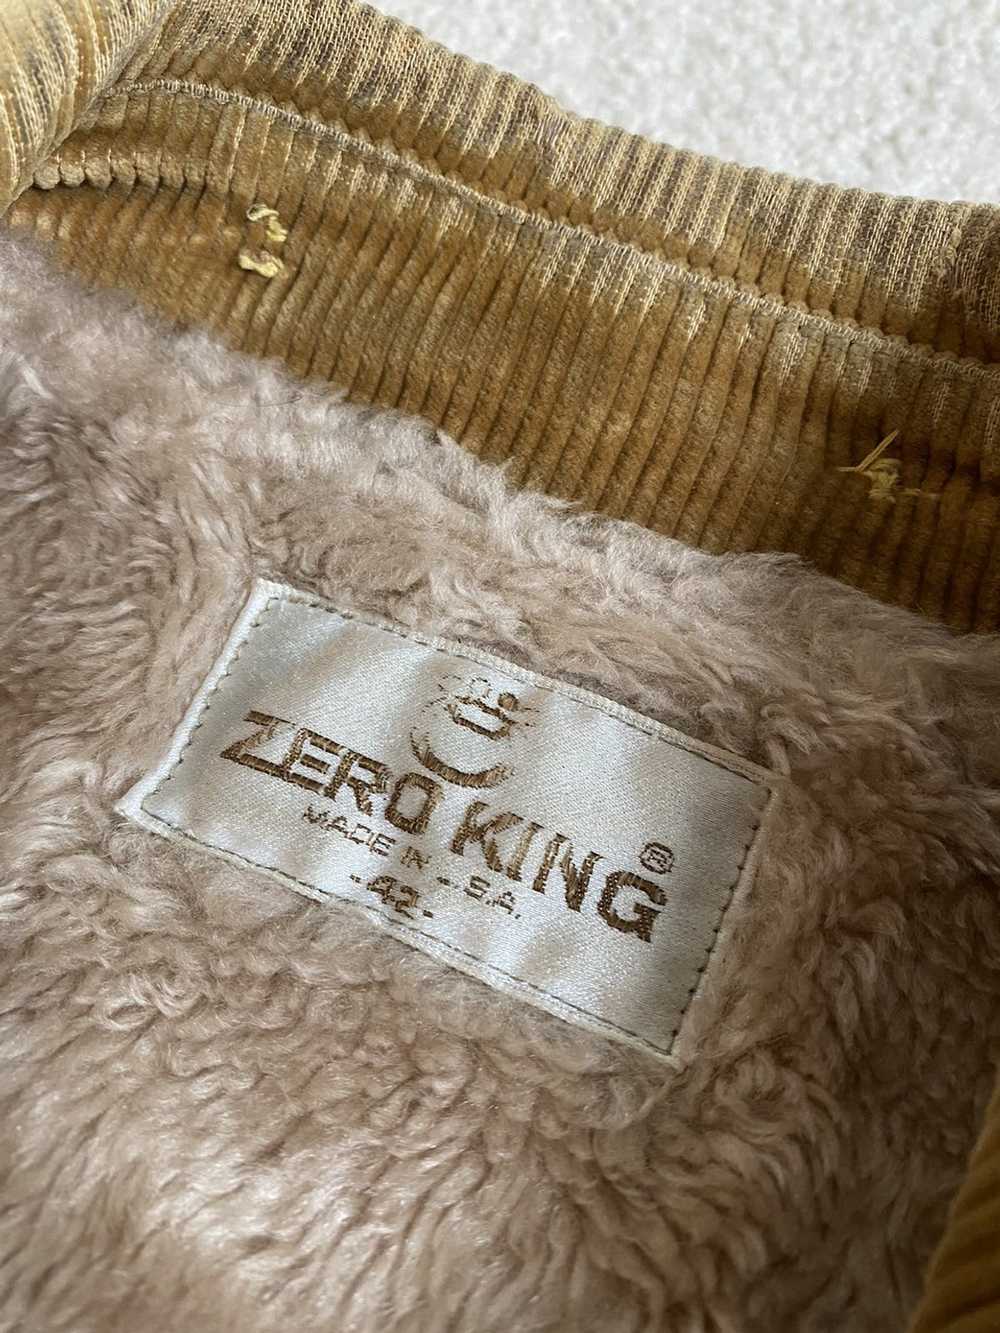 Zero King ZERO KING Corduroy Fur Jacket 1967 Vint… - image 3